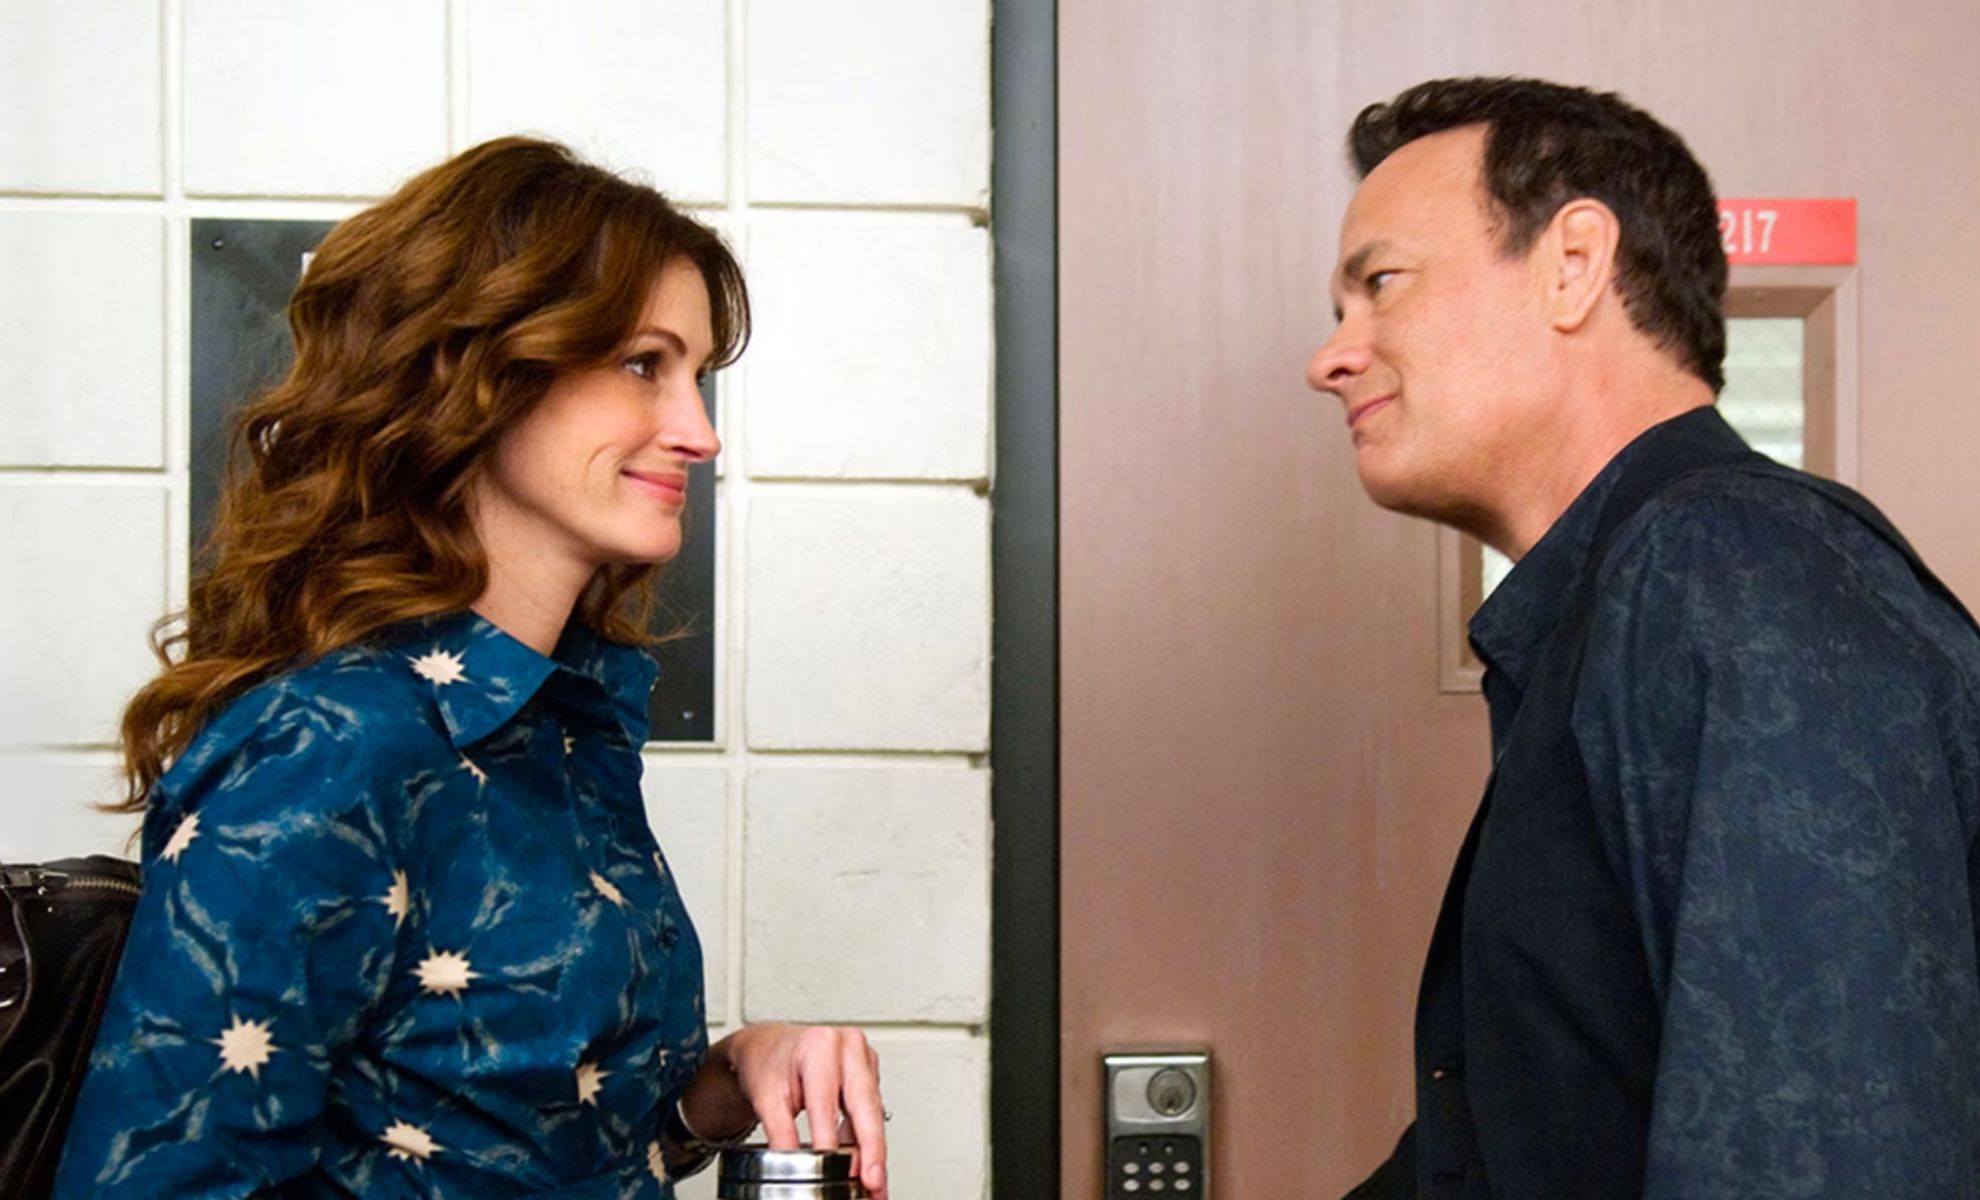 L'amore all'improvviso - Larry Crowne : La Toccante Storia di Tom Hanks e Julia Roberts su La 5 Stasera!